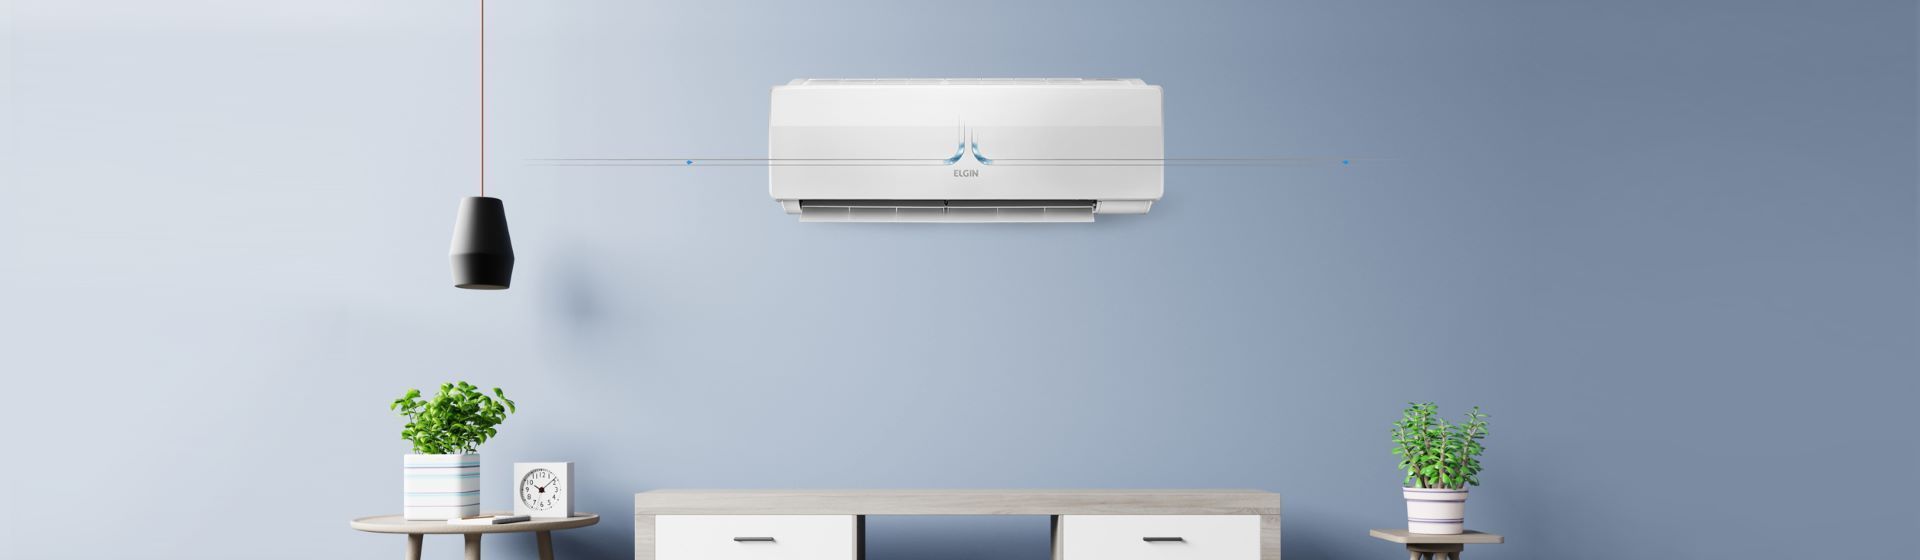 Ar-condicionado split branco instalado na parede azul de uma sala